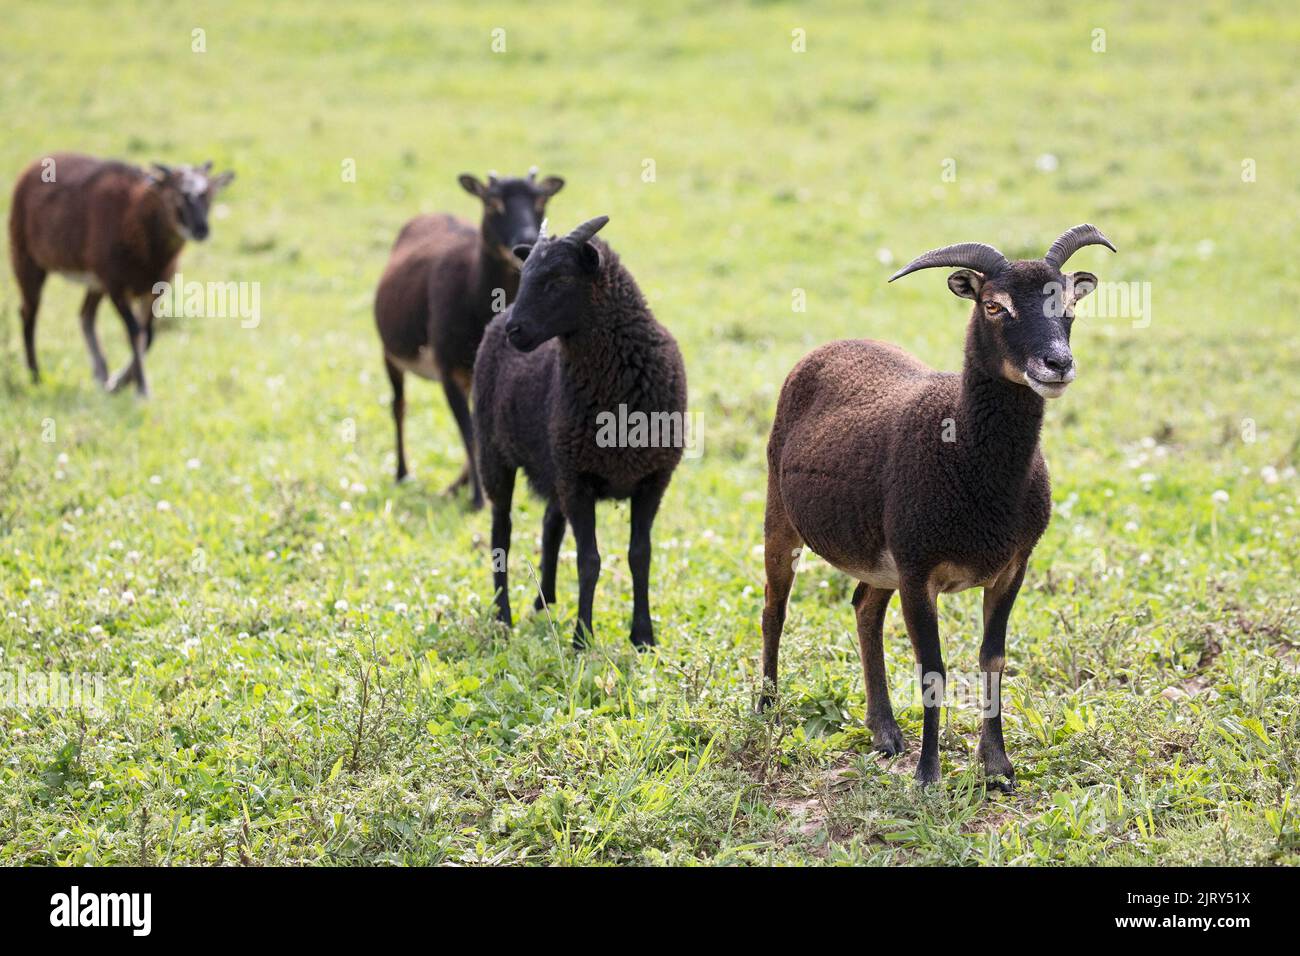 Oveja Soay que conduce un rebaño mixto de la raza. Las ovejas de Soay son una raza rara de ganado similar a los antepasados de las ovejas domésticas. Alberta, Canadá. Foto de stock